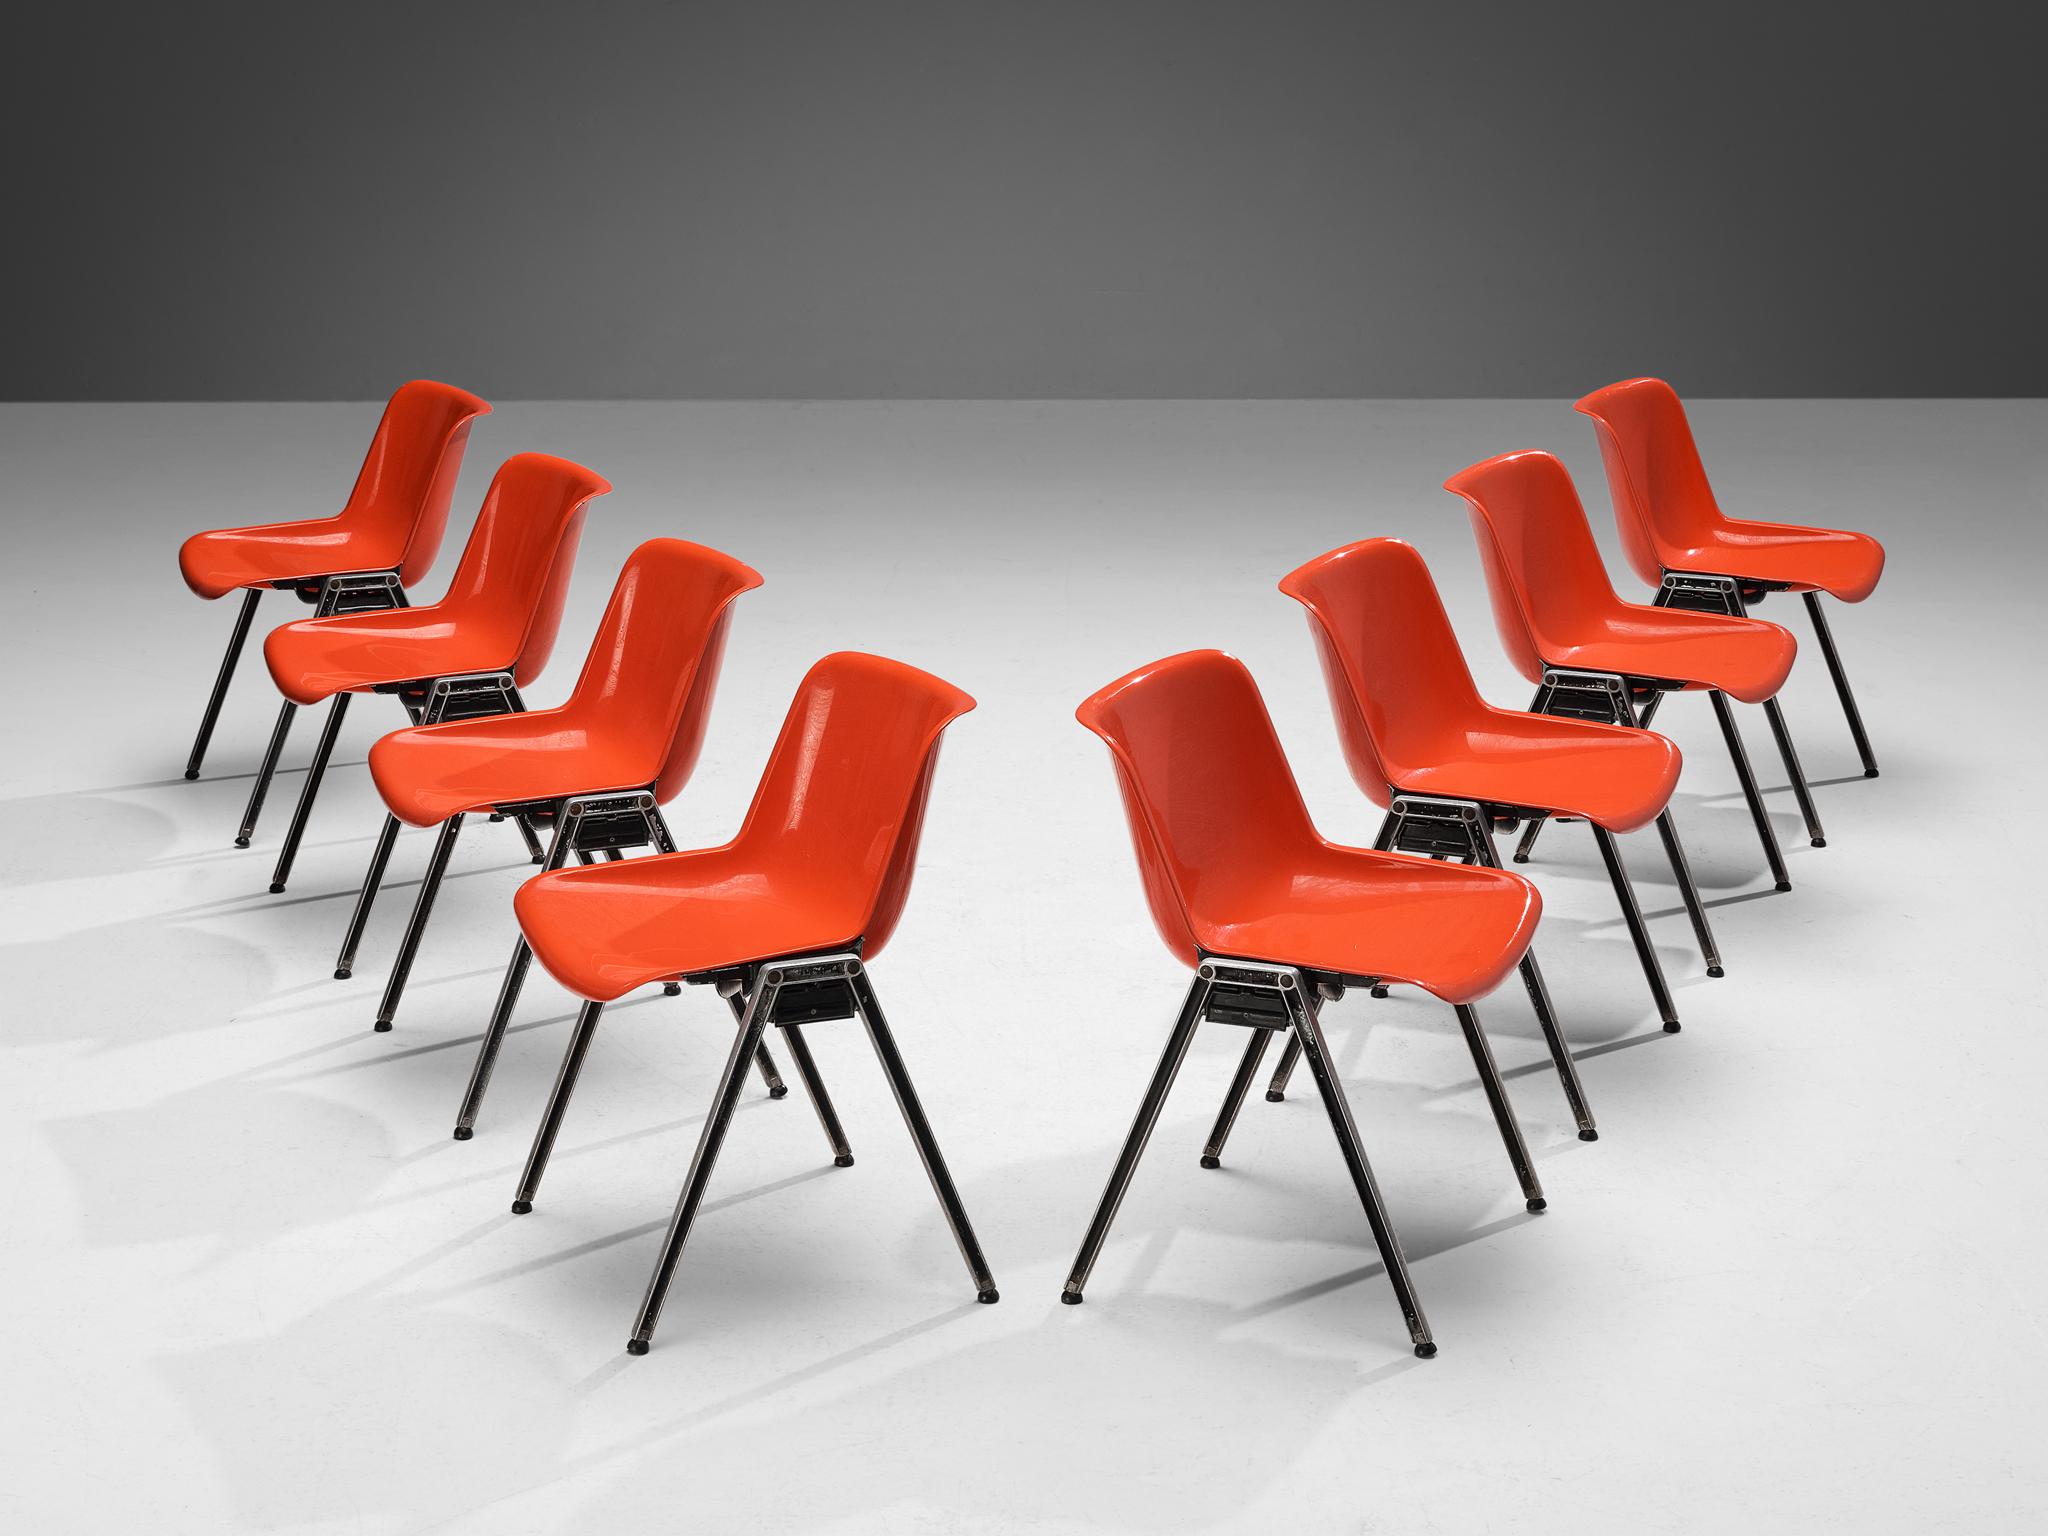 Centro Progetti Tecno, Satz von acht stapelbaren Stühlen Modell 'Modus', Nylon / Kunststoff, Aluminium, Metall, Italien, 1970er Jahre.

Von Centro Progetti Tecno entworfene hochfunktionelle Stühle, die zum Sitzsystem Modus gehören, dem ersten